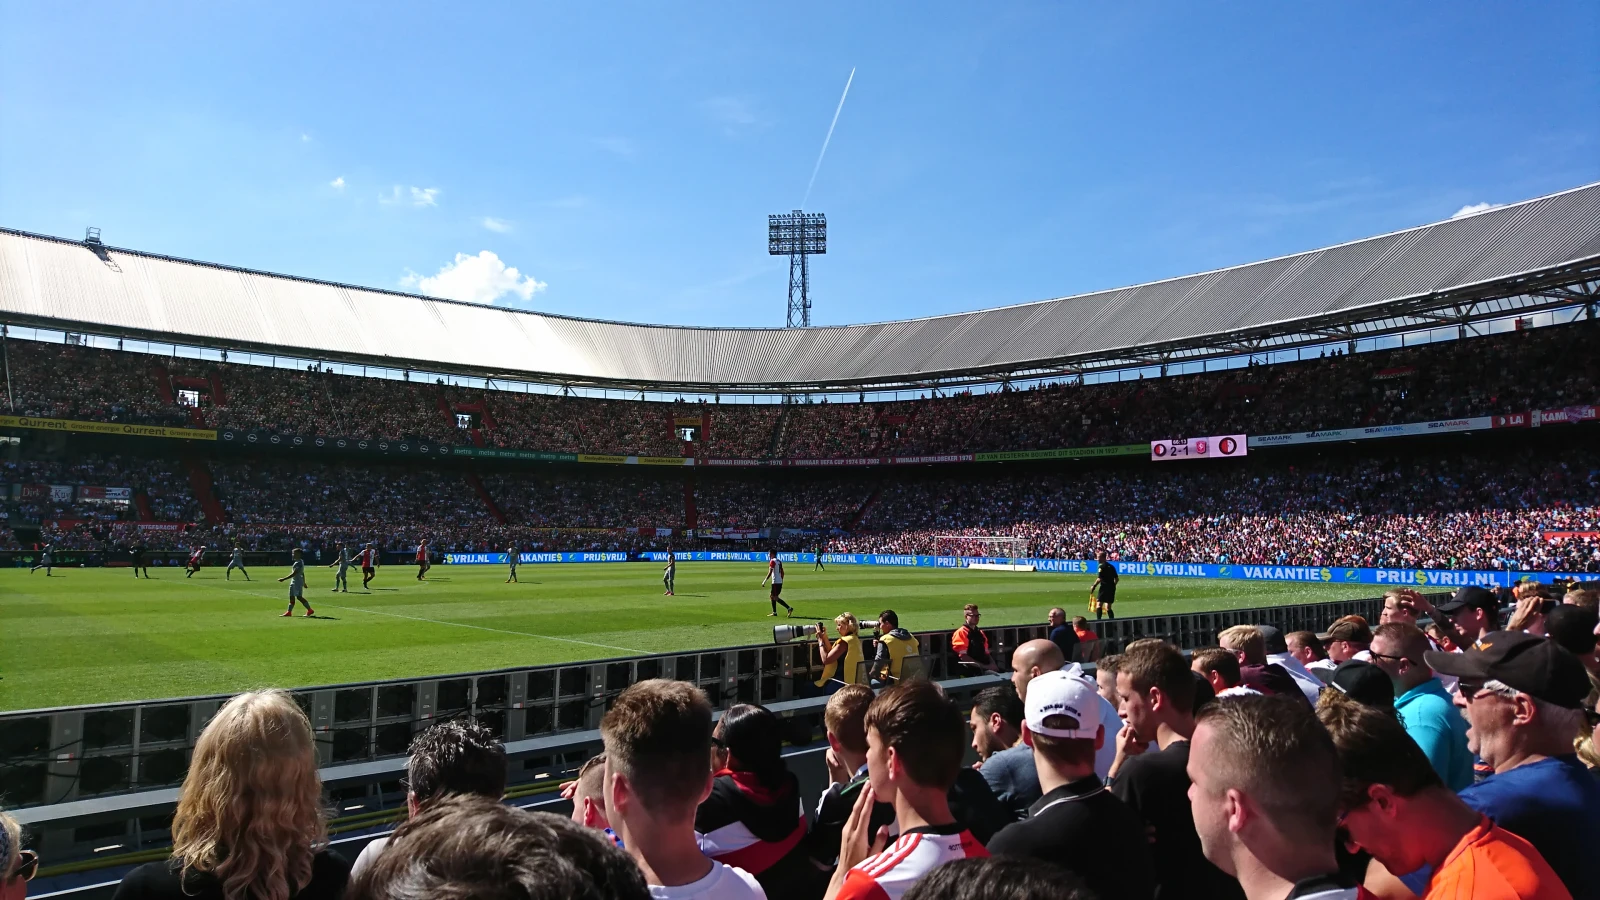 'We zijn nu druk met Feyenoord bezig hoe we het zo kunnen organiseren dat de kijker er zo min mogelijk last van heeft'